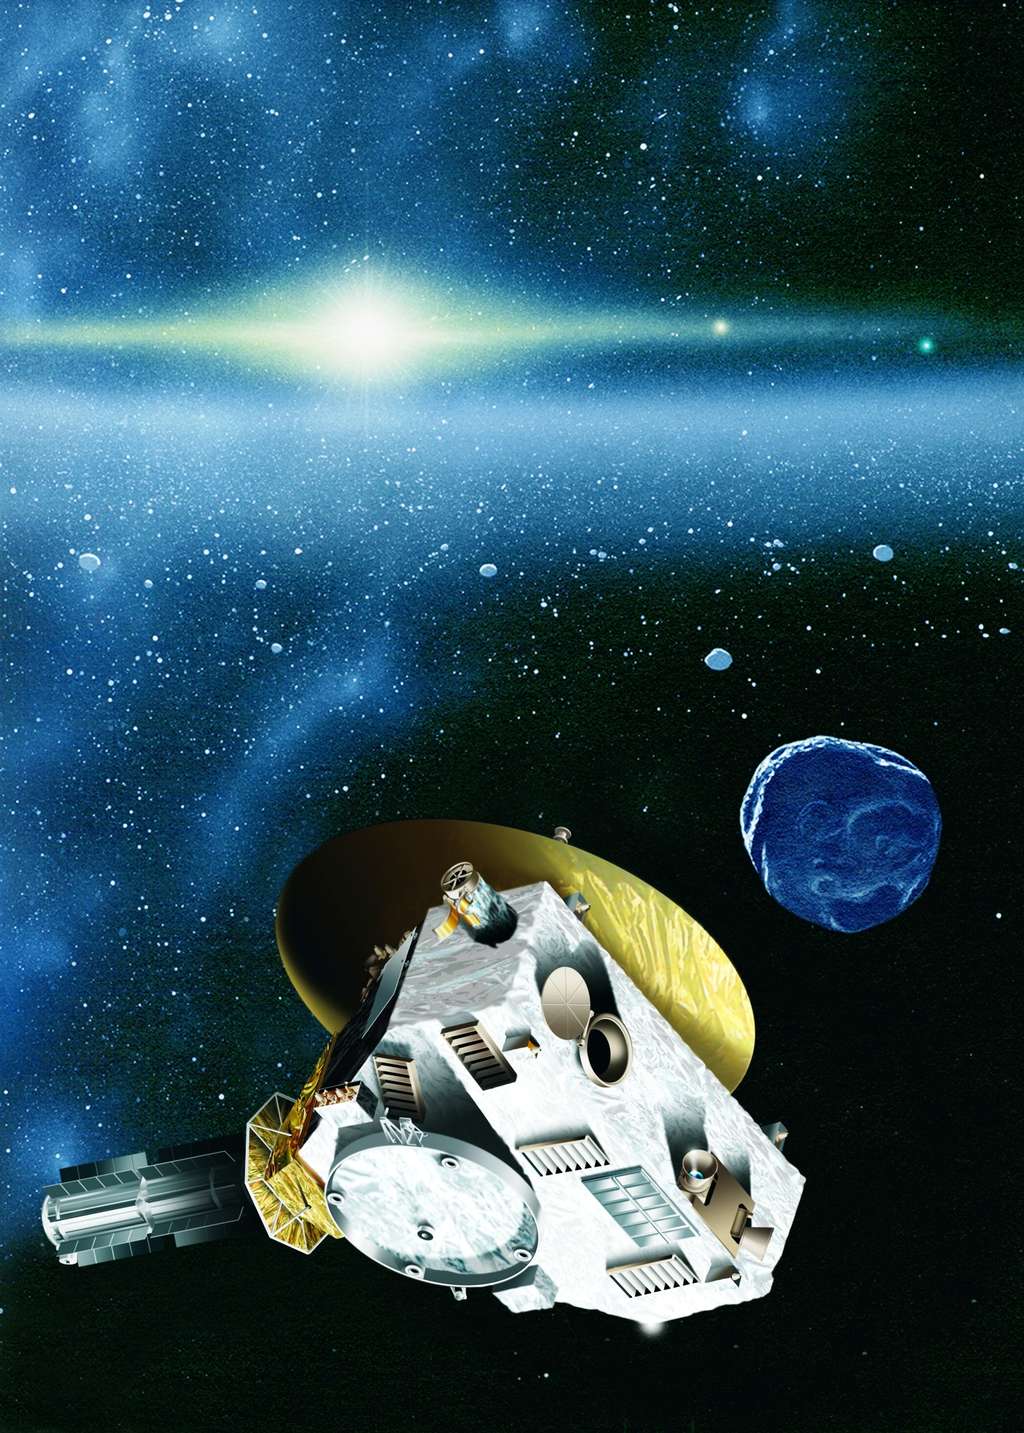 Après Pluton, la sonde New horizons devrait se diriger vers un objet transneptunien. Sa trajectoire pourrait nous révéler l'existence de corps célestes beaucoup plus massifs, des superterres. © <em>Johns Hopkins University APL</em>/<em>Southwest Research Institute</em>